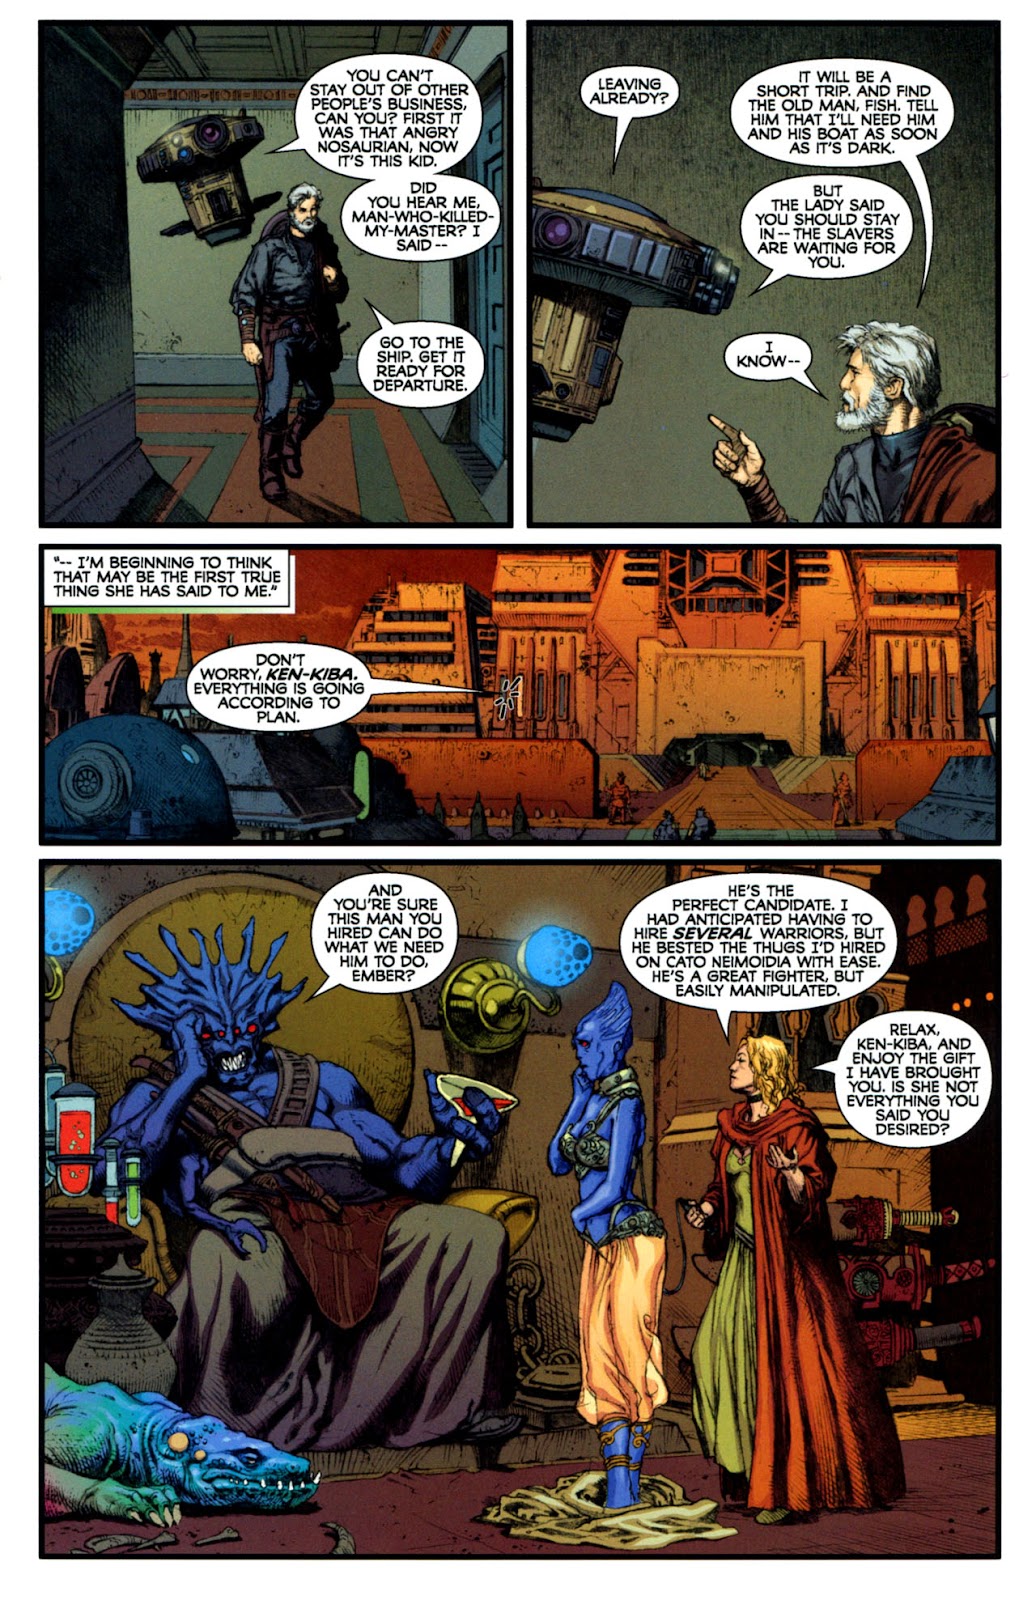 Star Wars: Dark Times issue 14 - Blue Harvest, Part 2 - Page 14